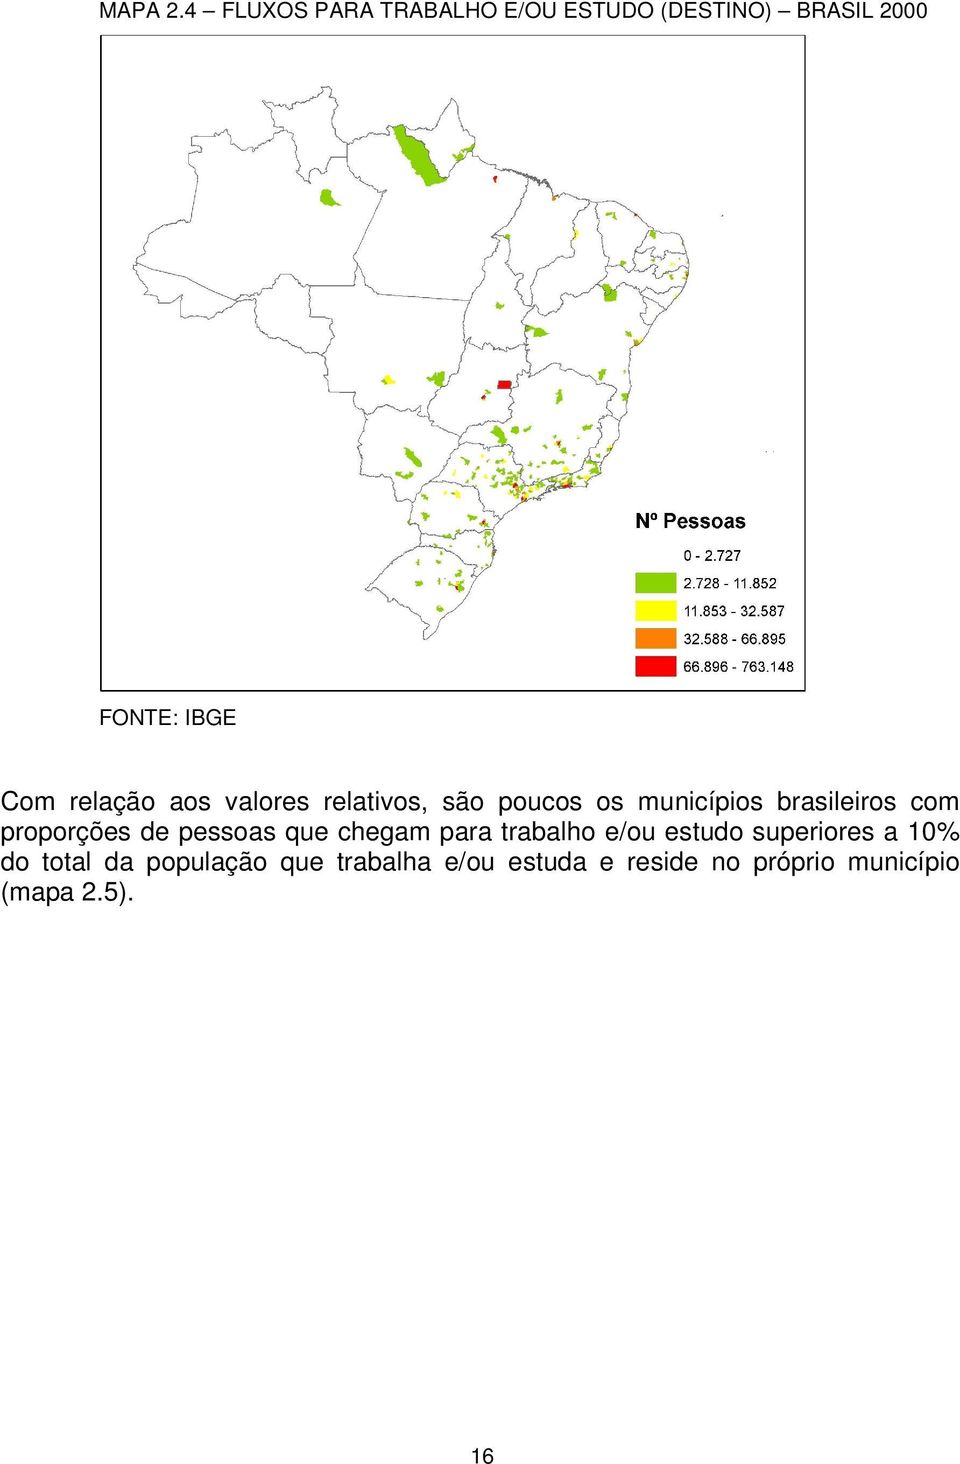 relação aos valores relativos, são poucos os municípios brasileiros com